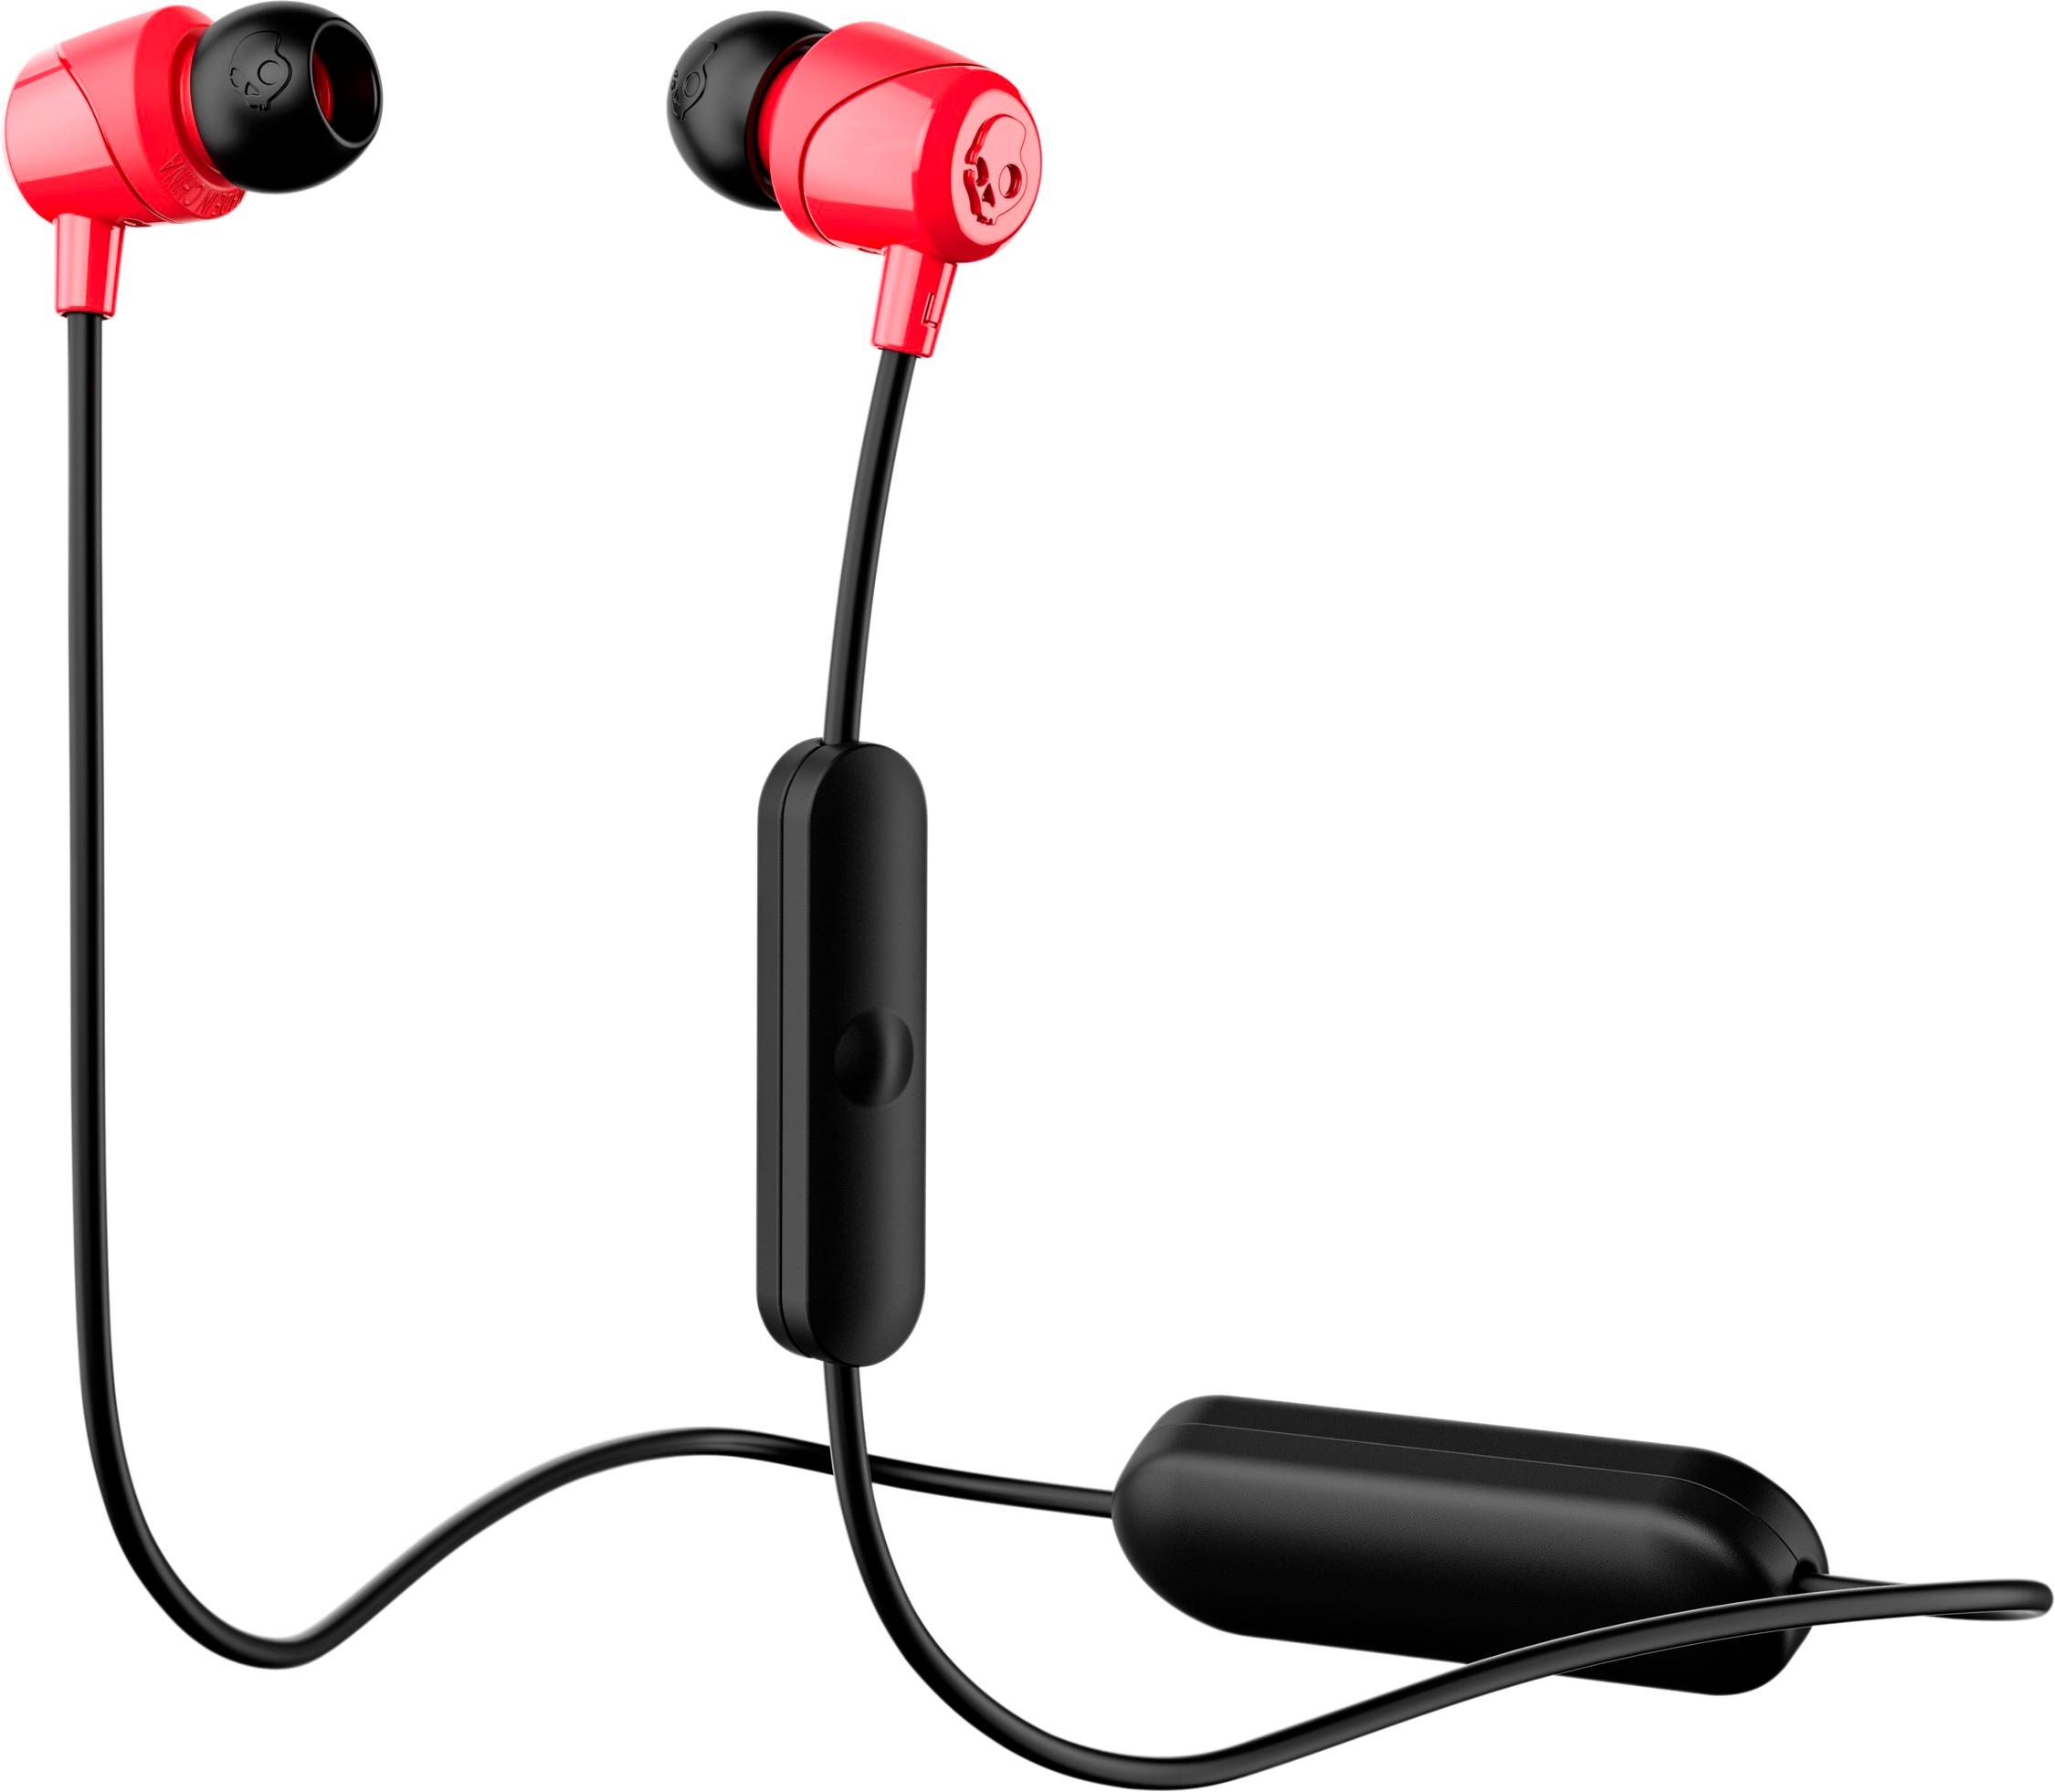 Skullcandy Jib Wireless Headphones Black/Red S2DUW-K010 - Best Buy